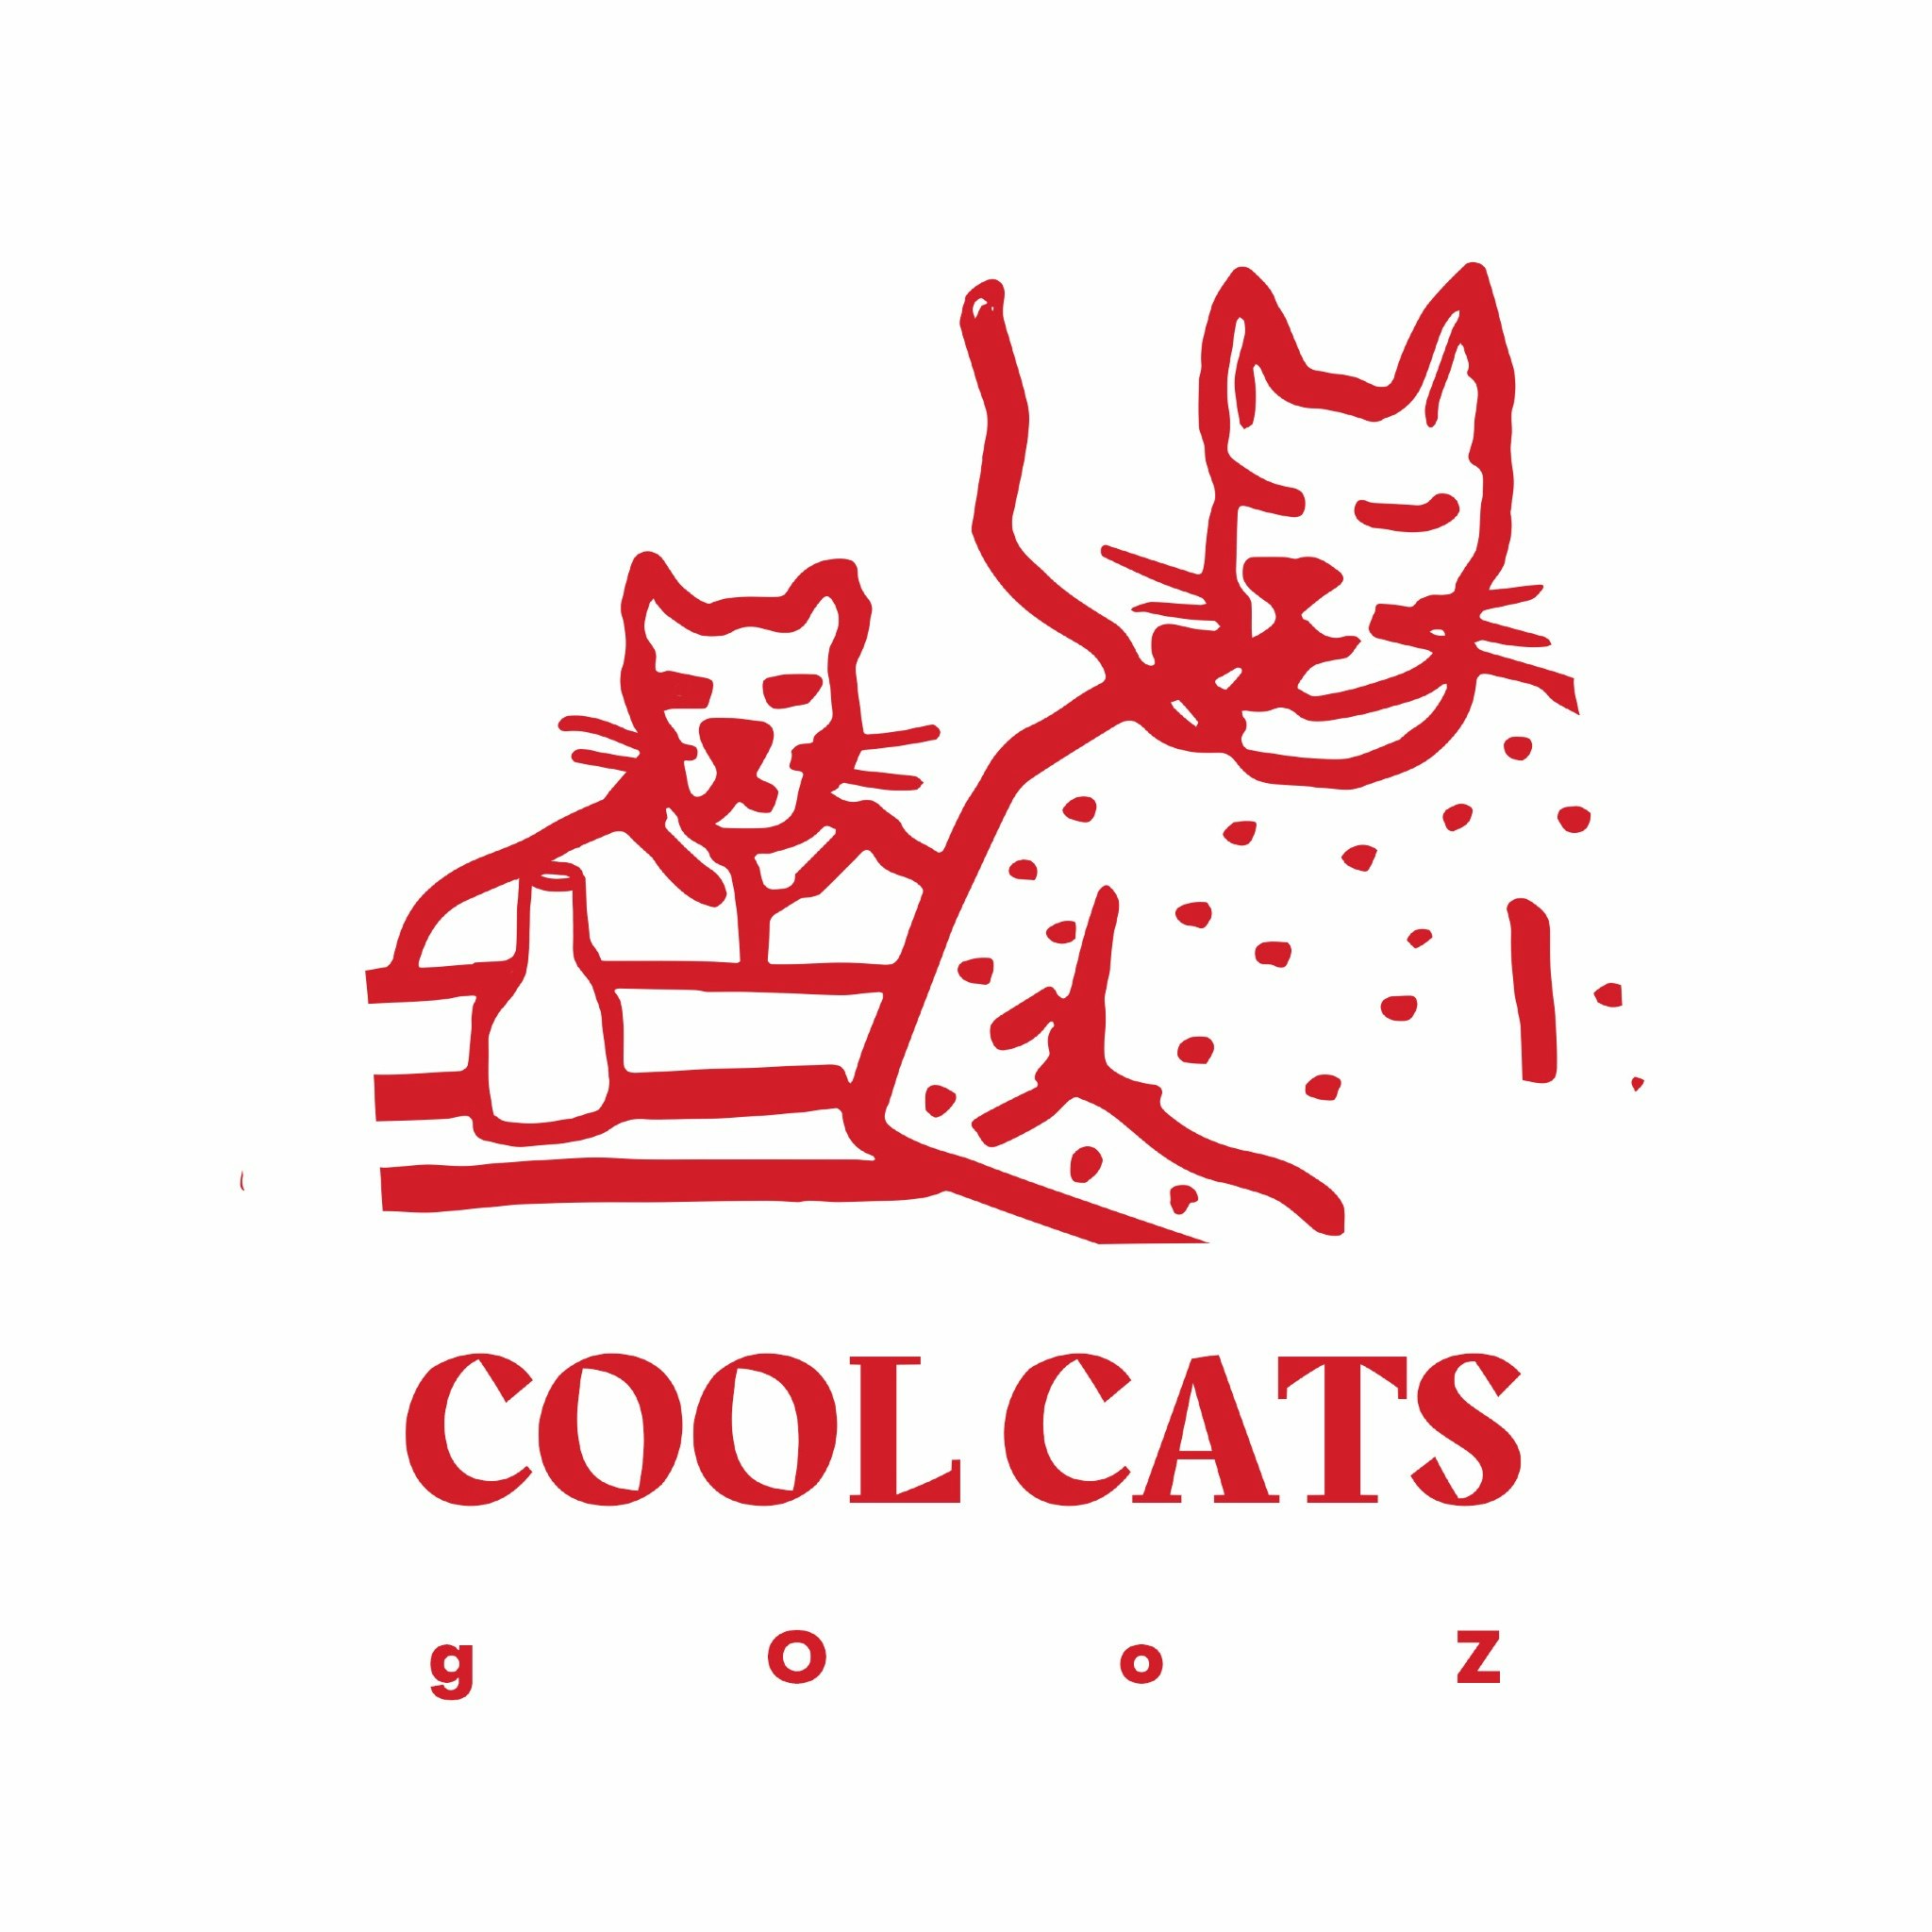 Www.coolcats.net